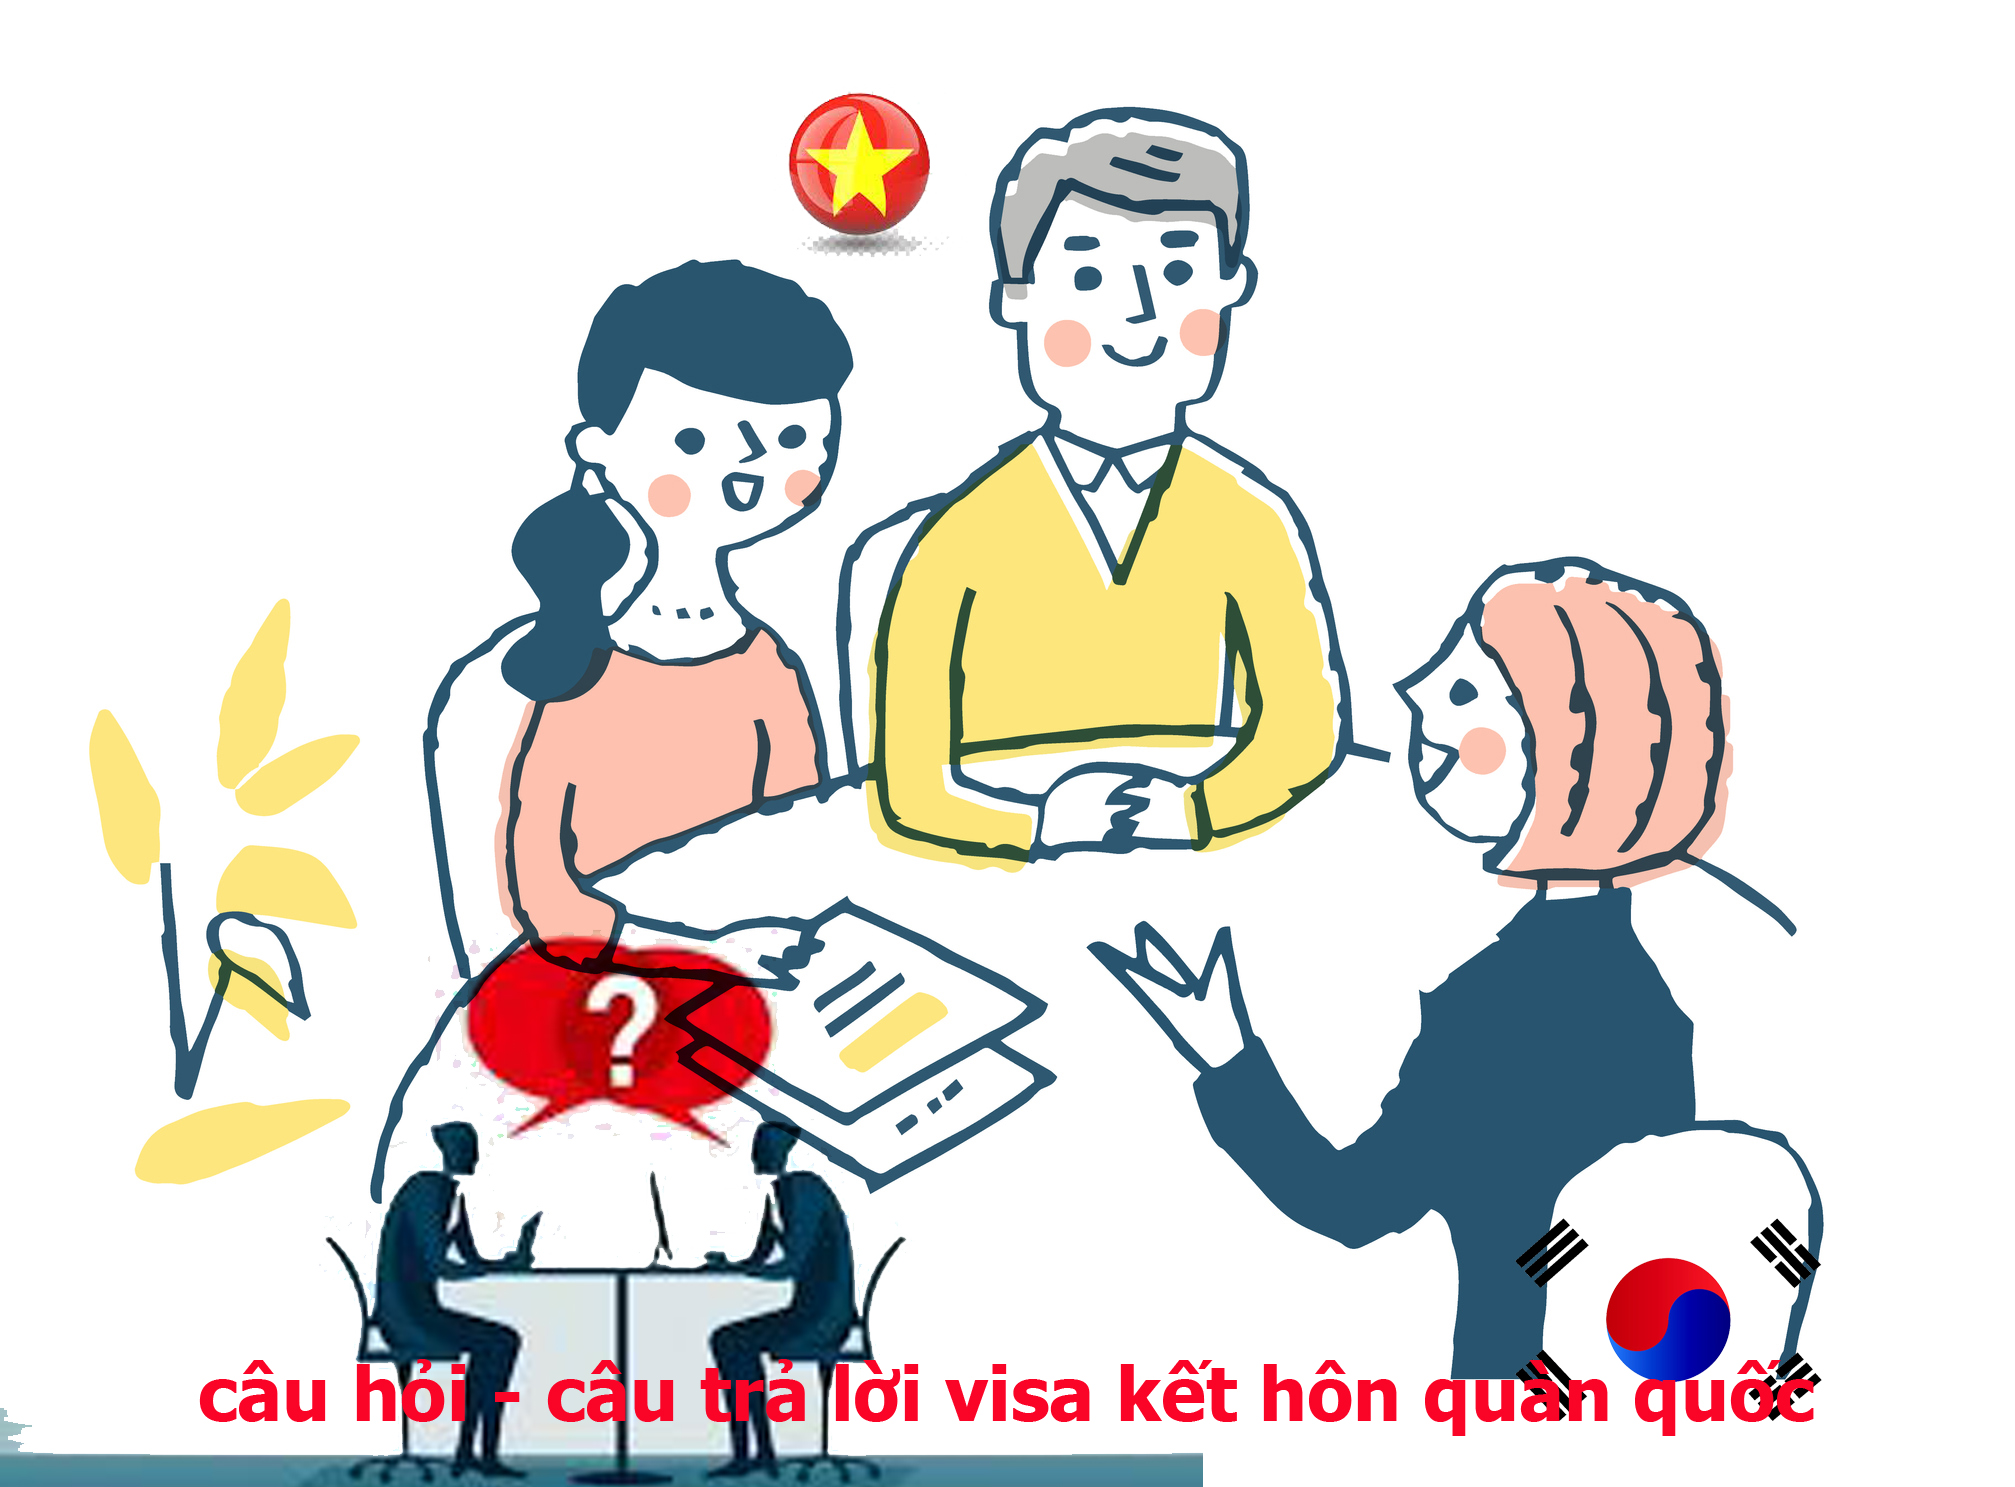 câu hỏi phỏng vấn visa kết hôn với người hàn quốc (câu hỏi hỏi phỏng vấn visa f6-1)